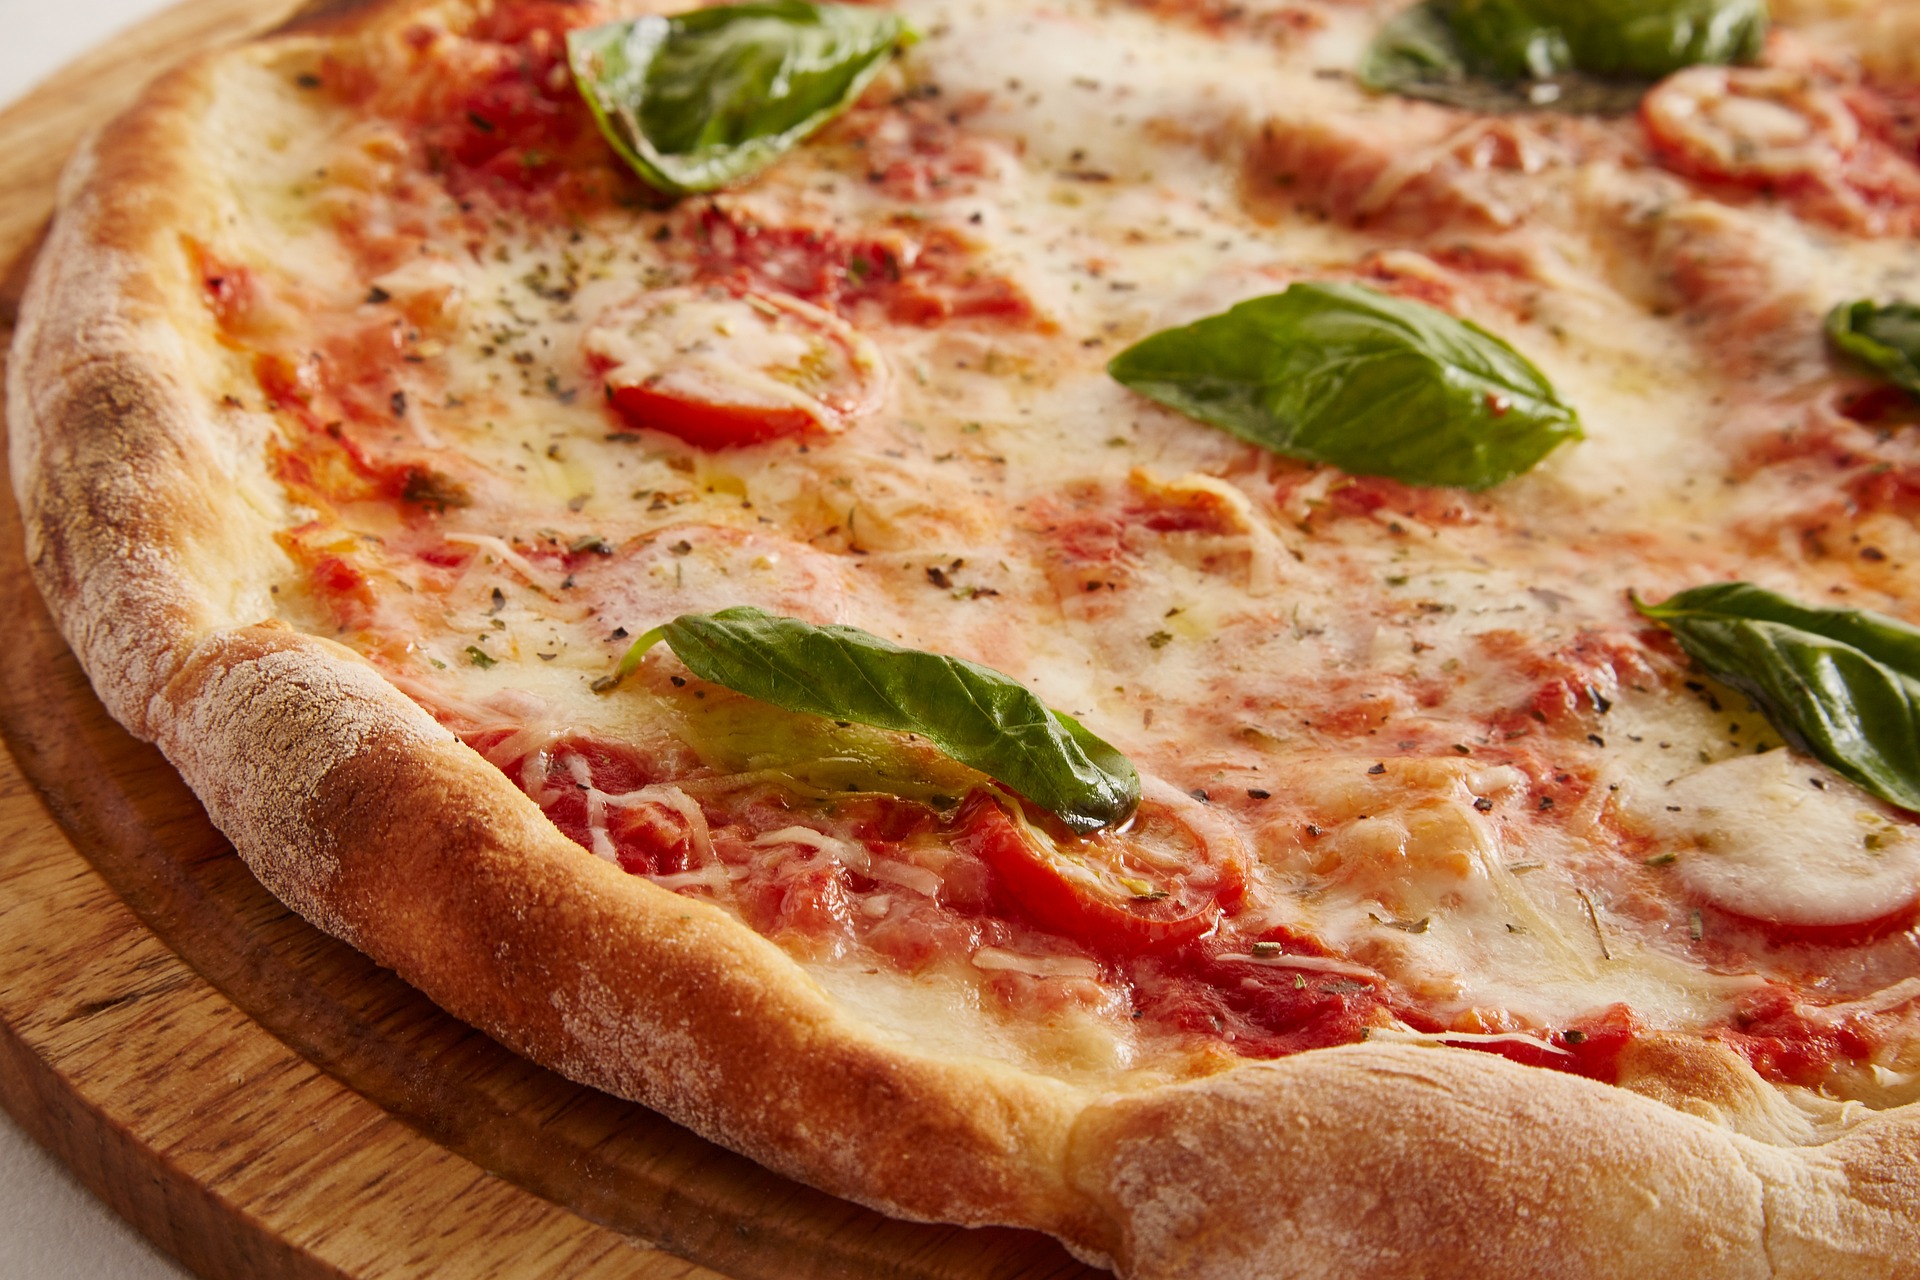 A pizza close-up